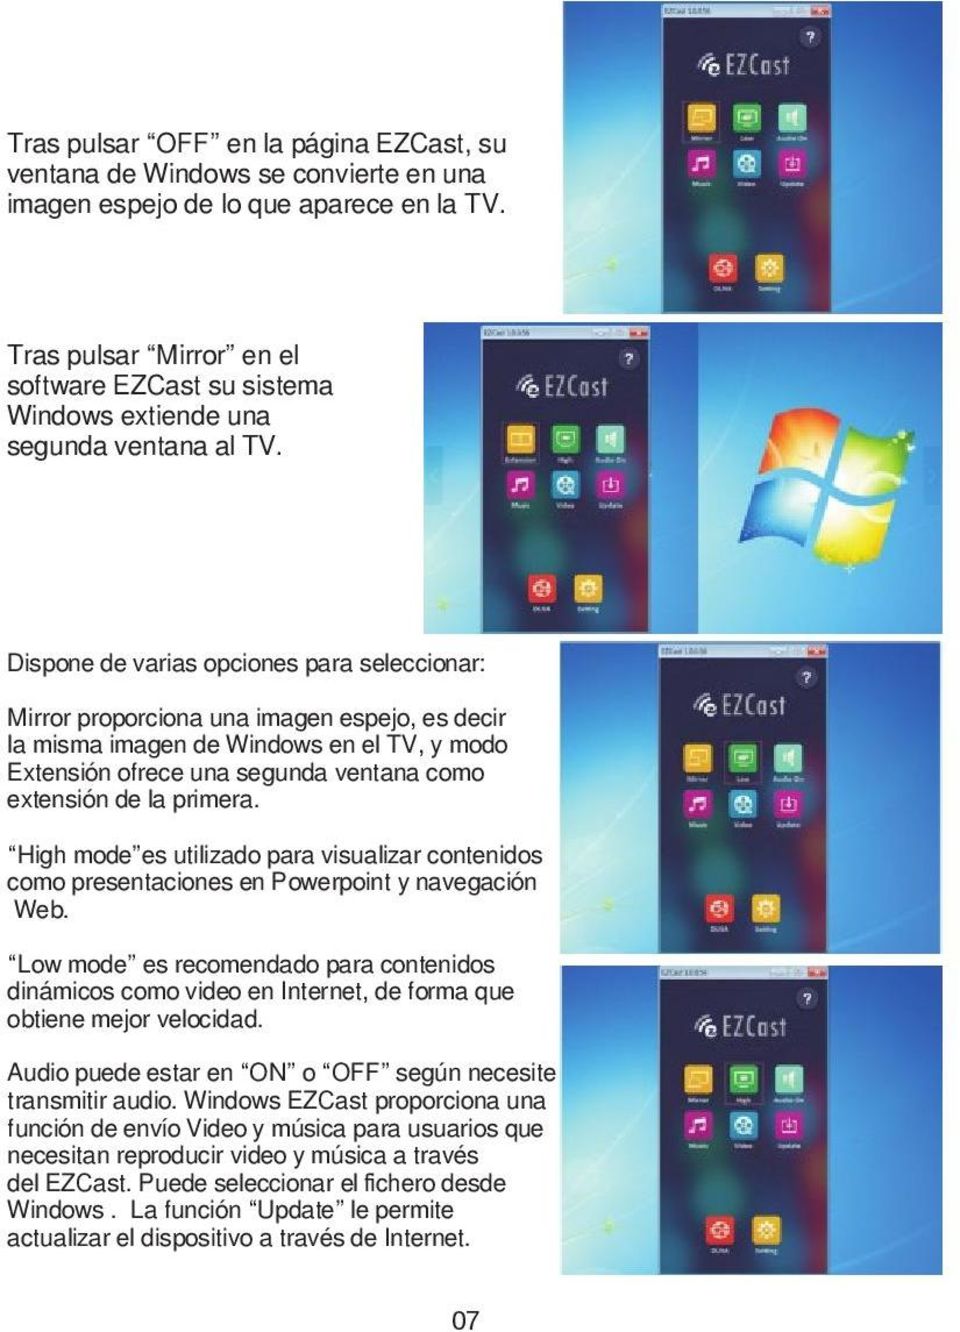 Dispone de varias opciones para seleccionar: Mirror proporciona una imagen espejo, es decir la misma imagen de Windows en el TV, y modo Extensión ofrece una segunda ventana como extensión de la